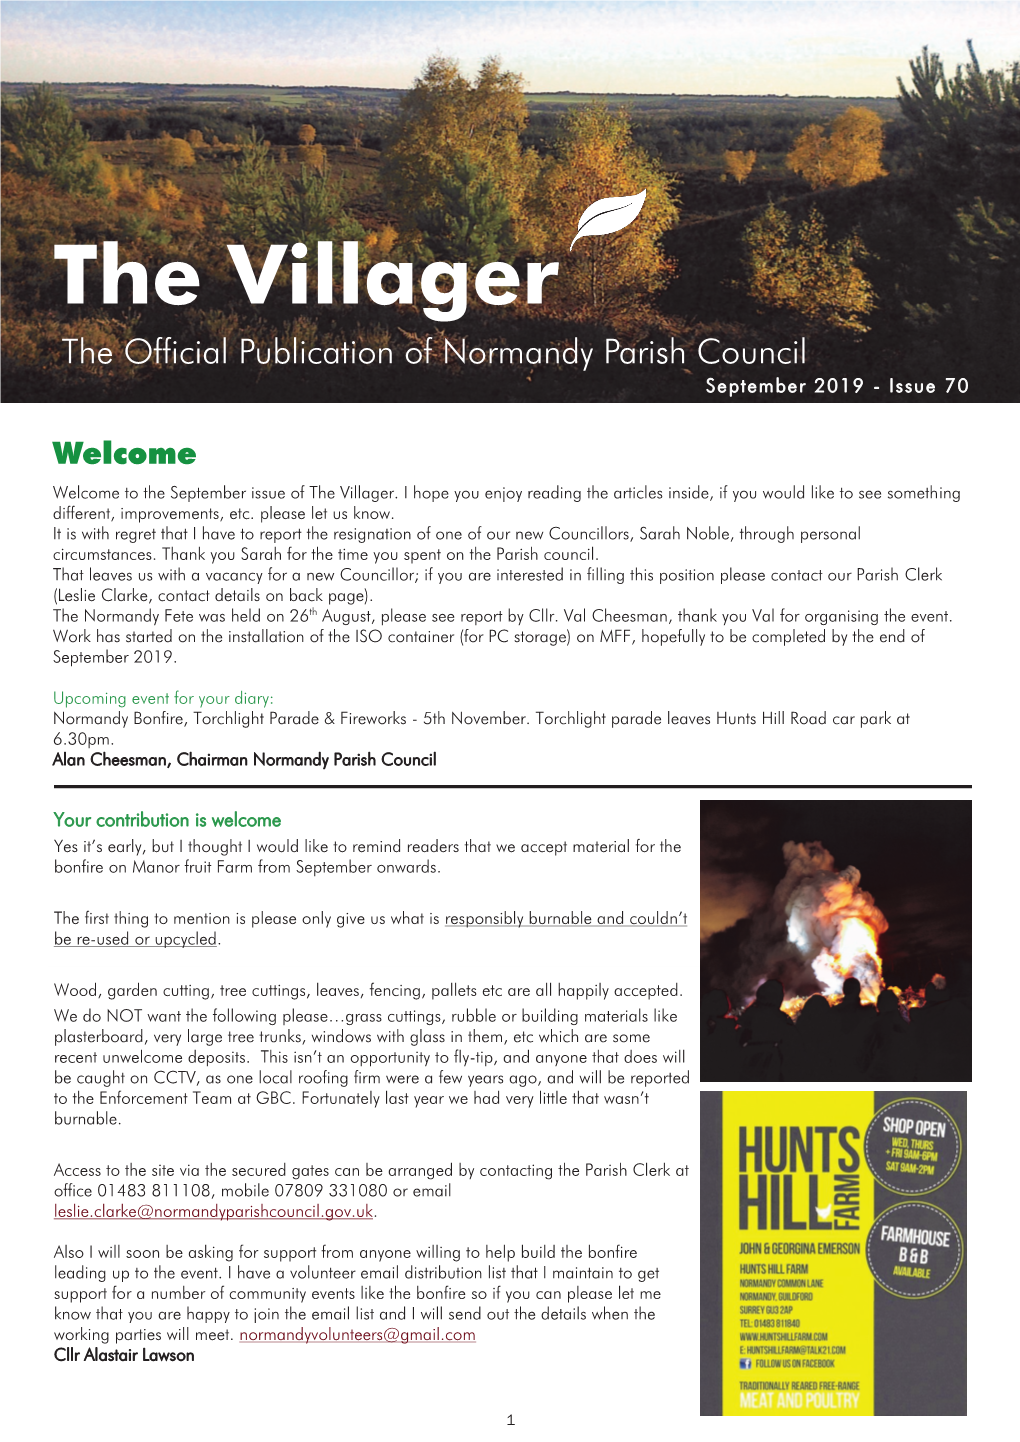 The Villager September 19